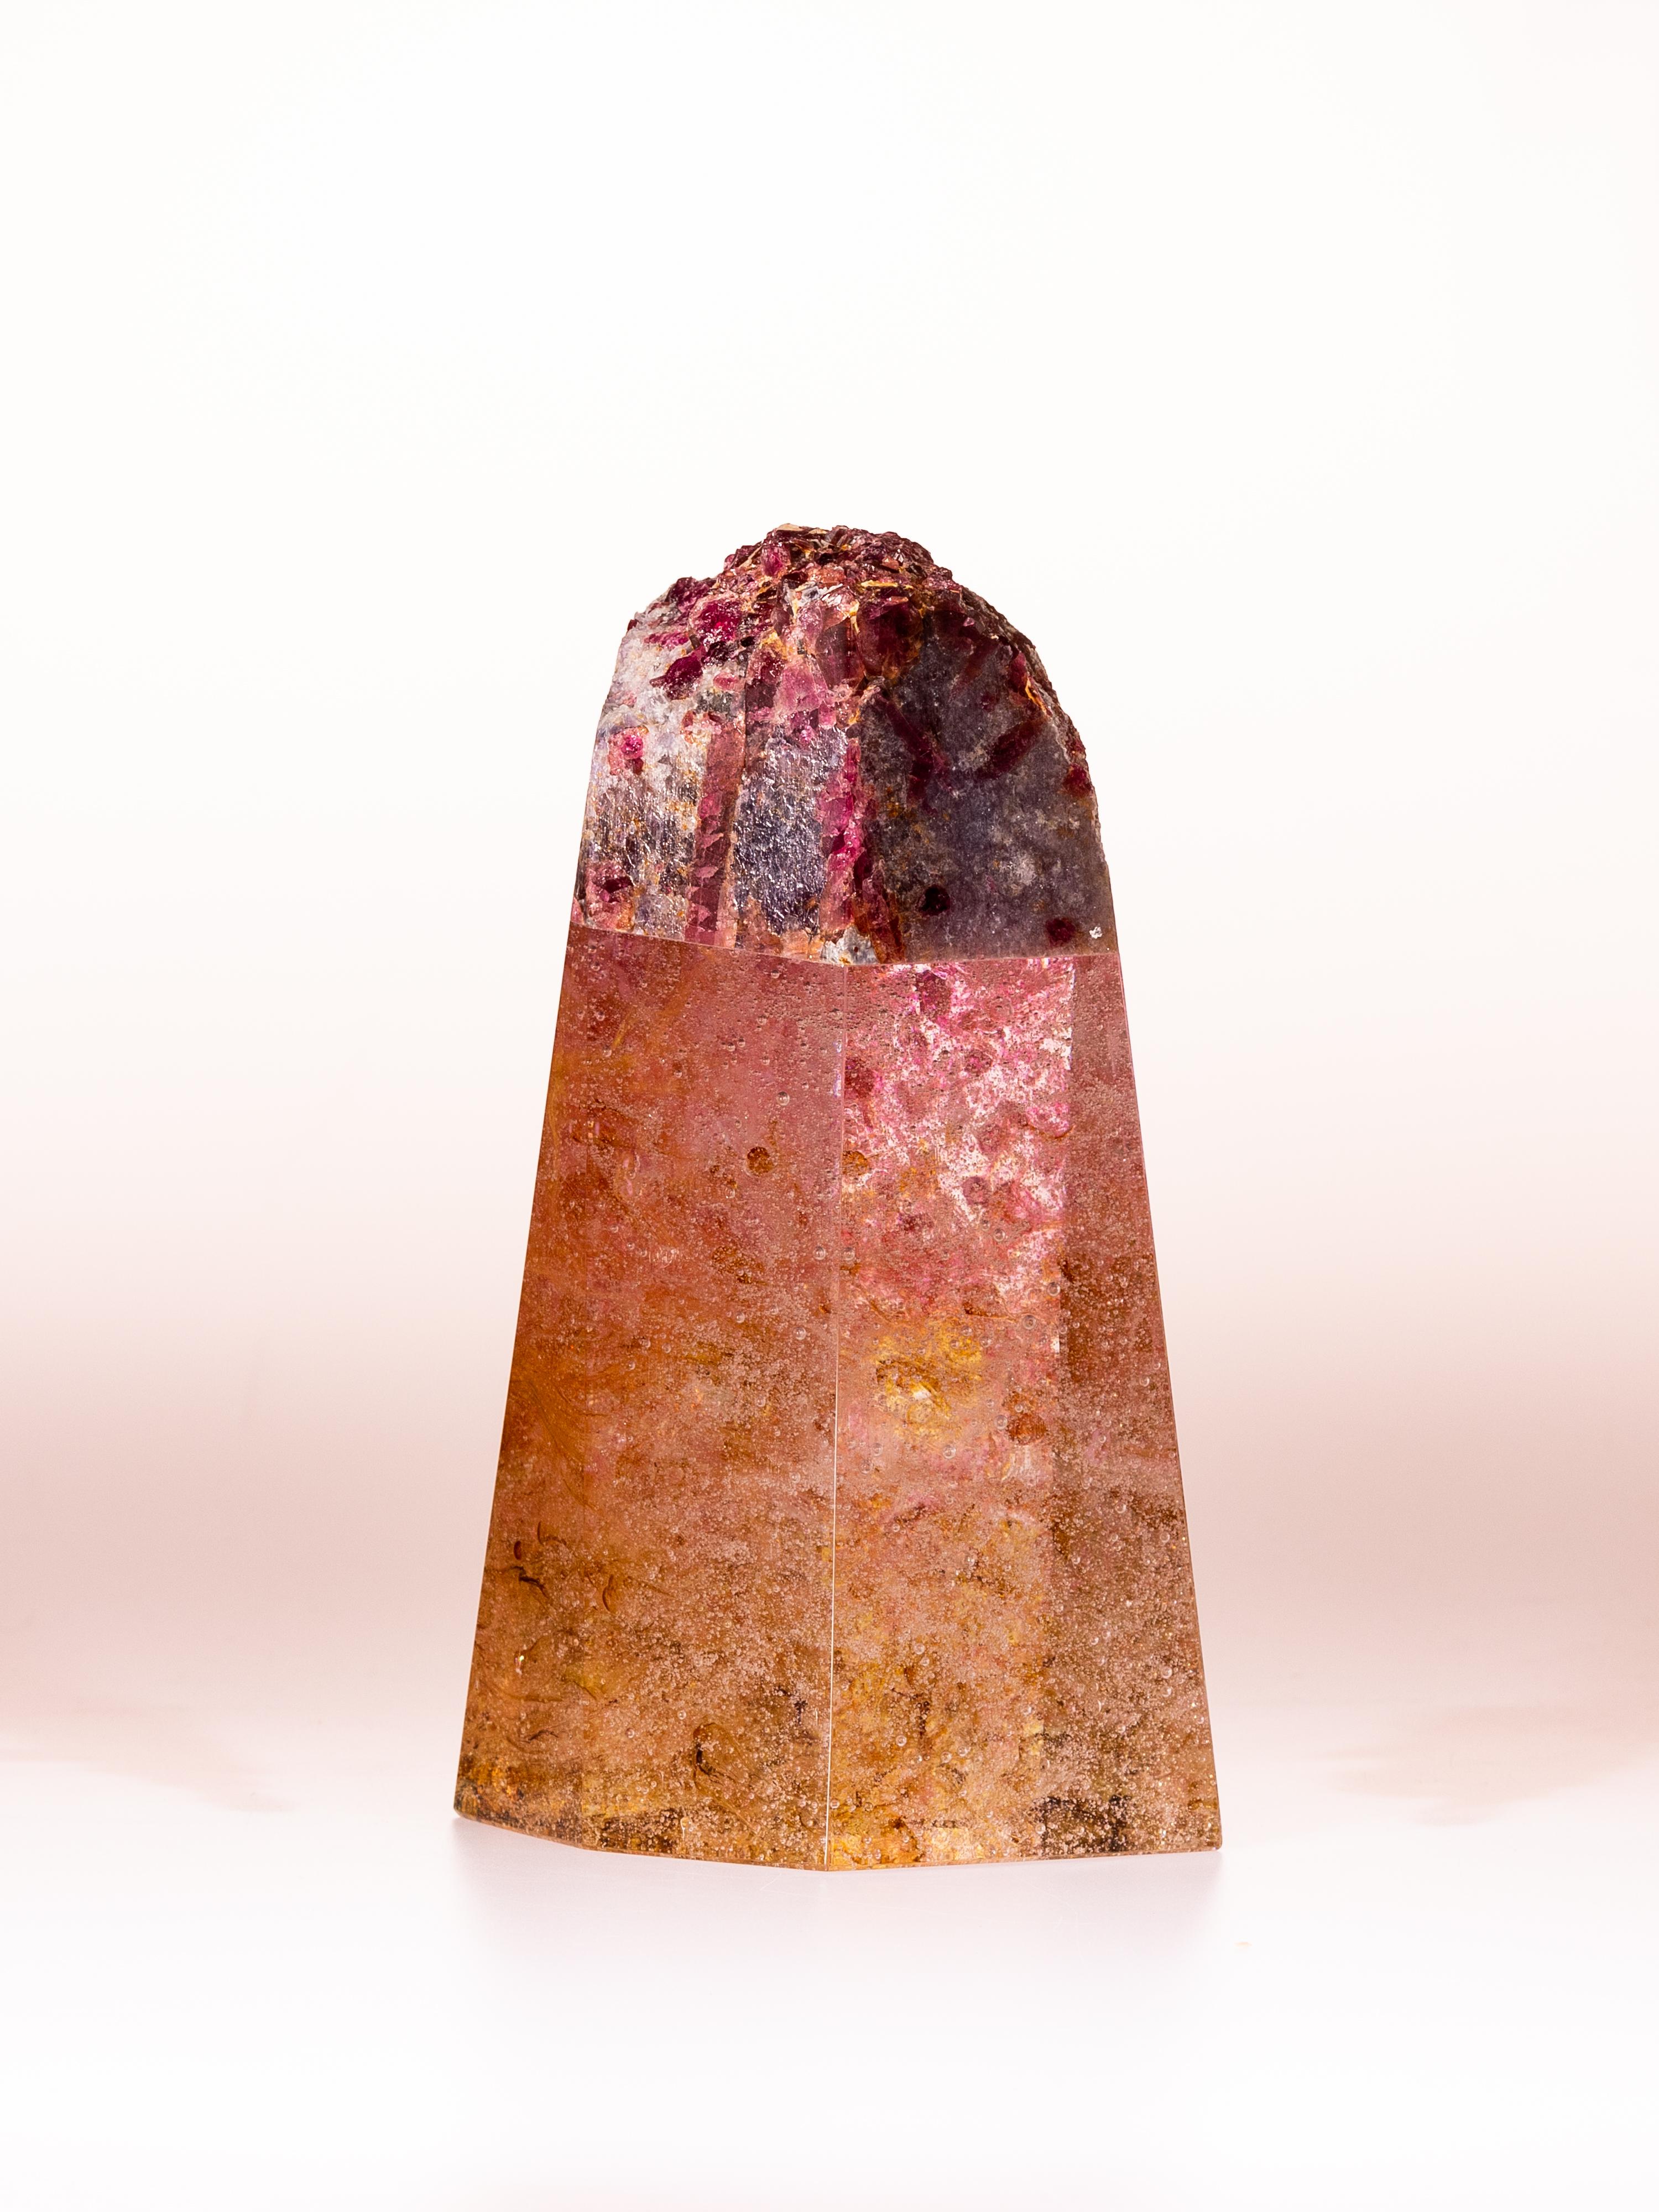 Tourmaline, rose quartz and glass sculpture by Ernesto Duran and glass artist Orfeo Quagliata.